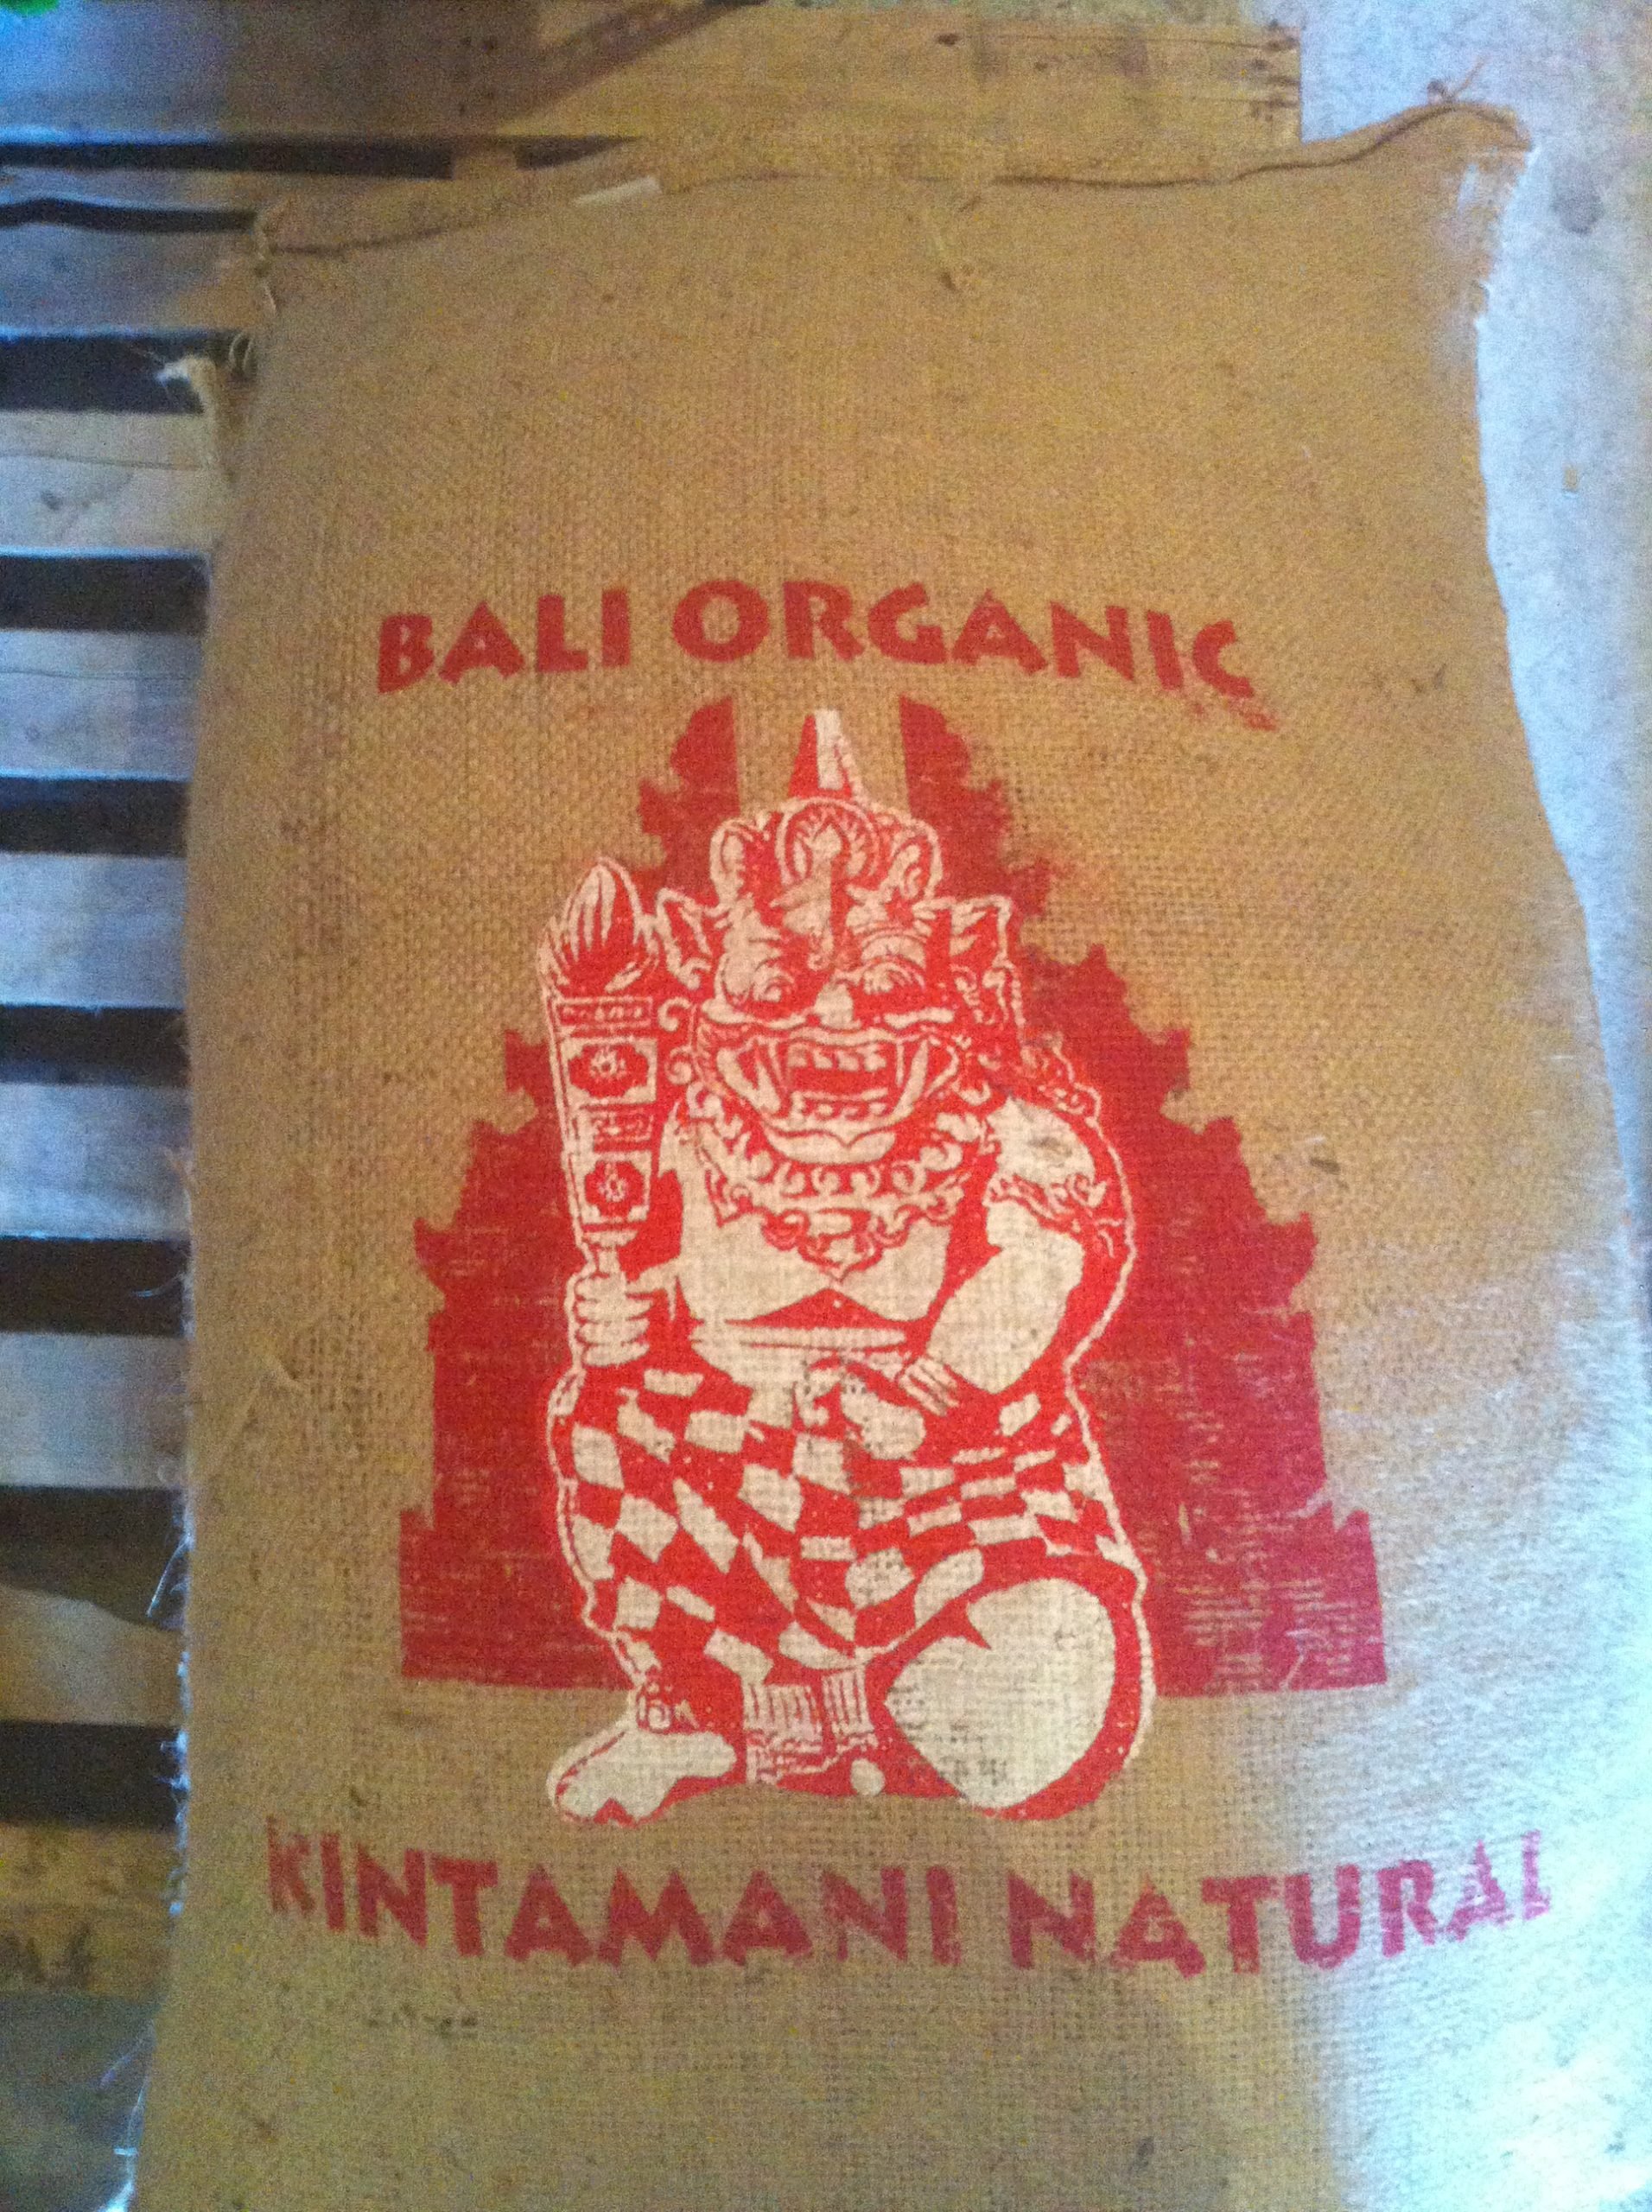 Bali Kintamani Natural – 100% Certified Organic